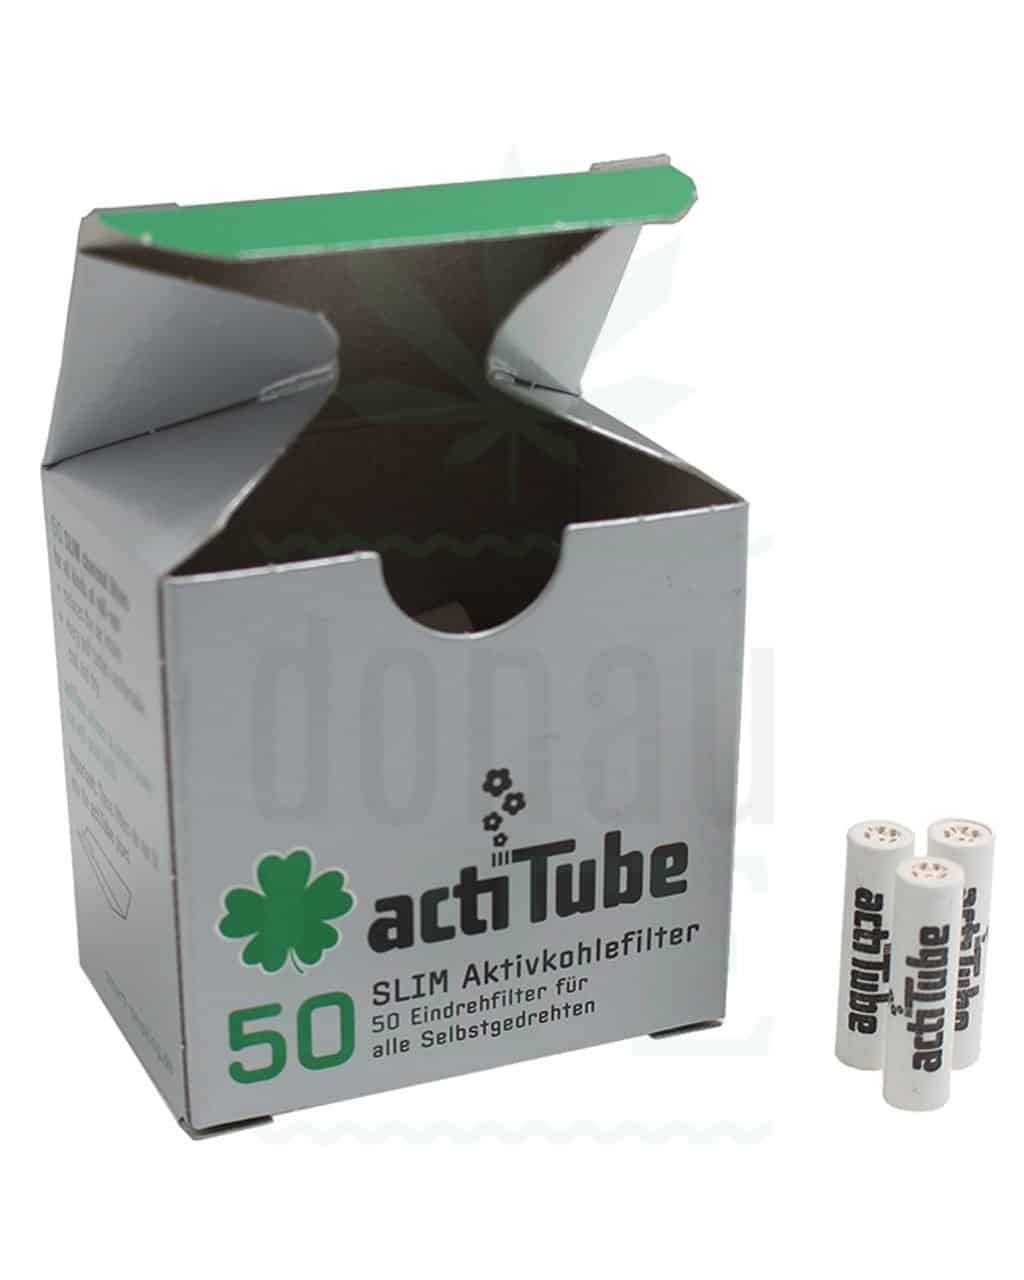 ACTITUBE Slim filtri a carbone attivo, 50 pezzi